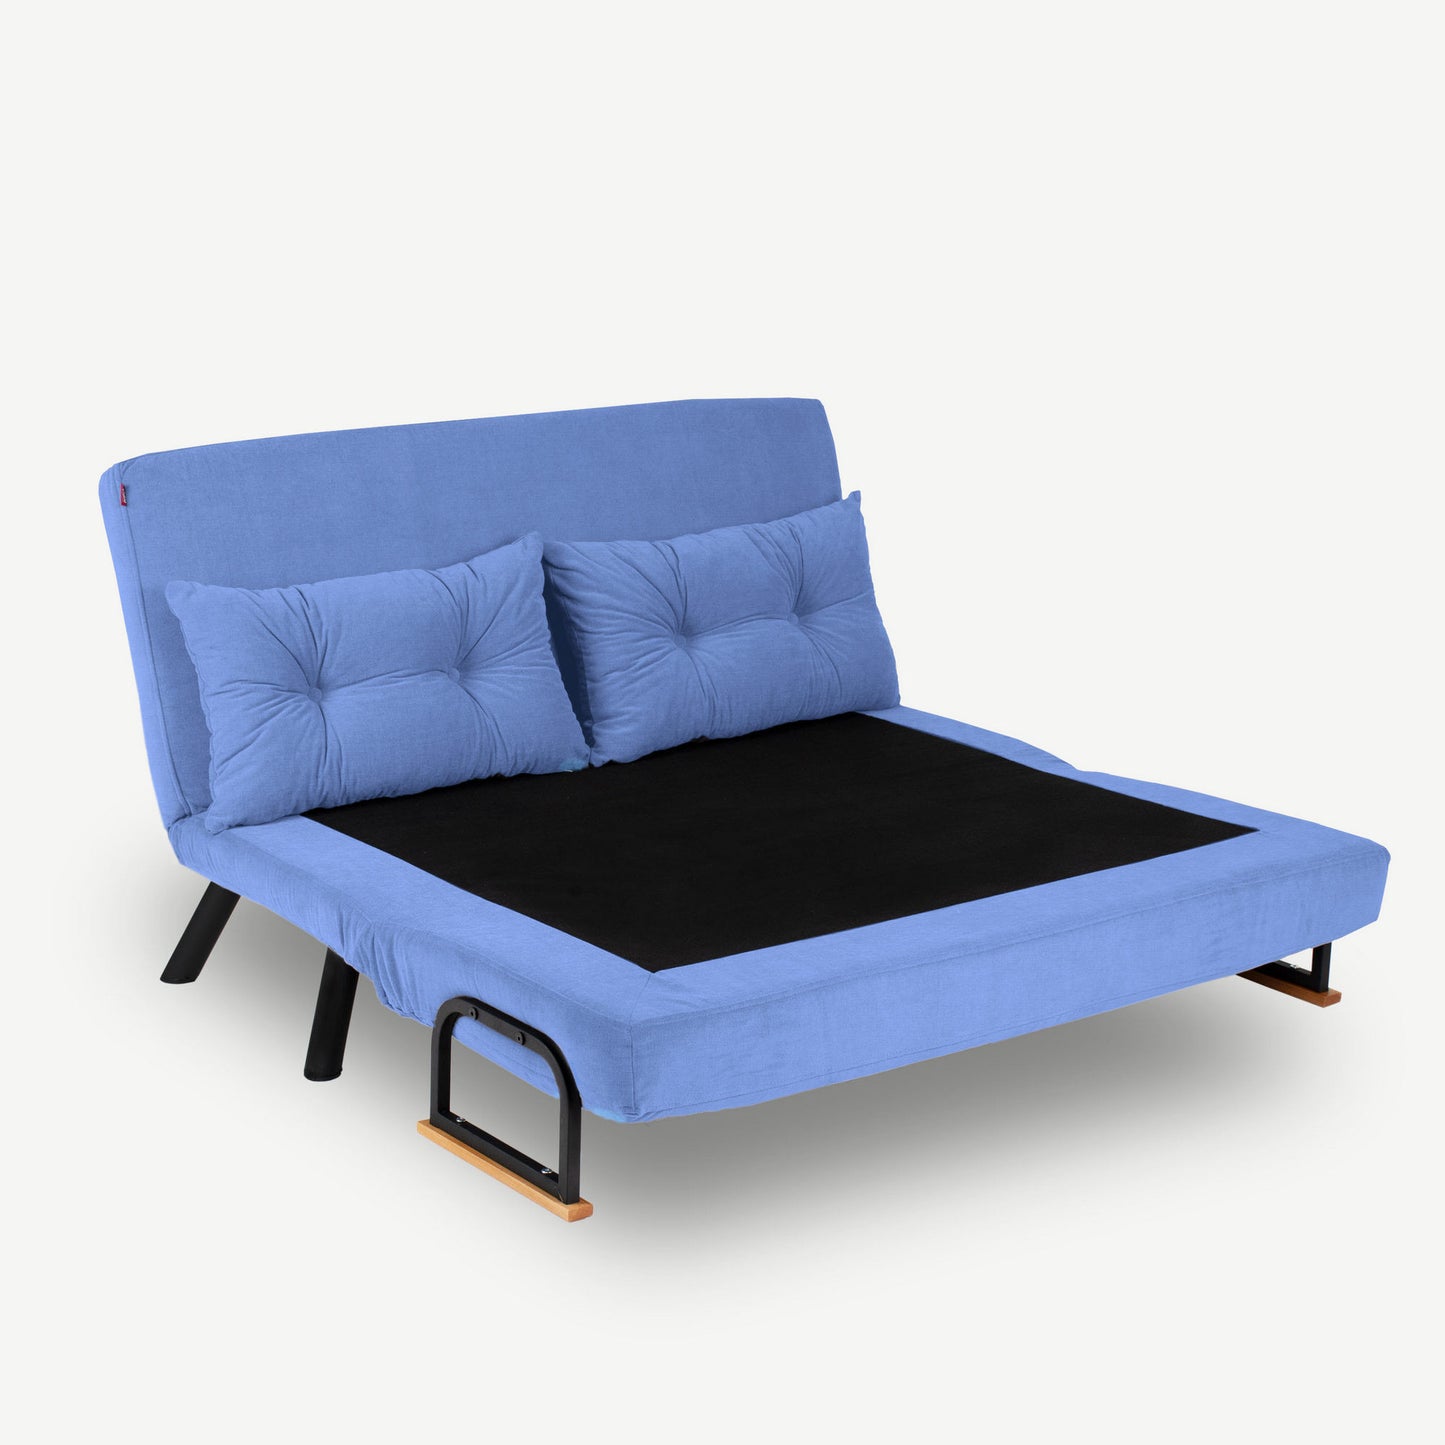 Sando 2-personers - Blå - 2-sæders sovesofa